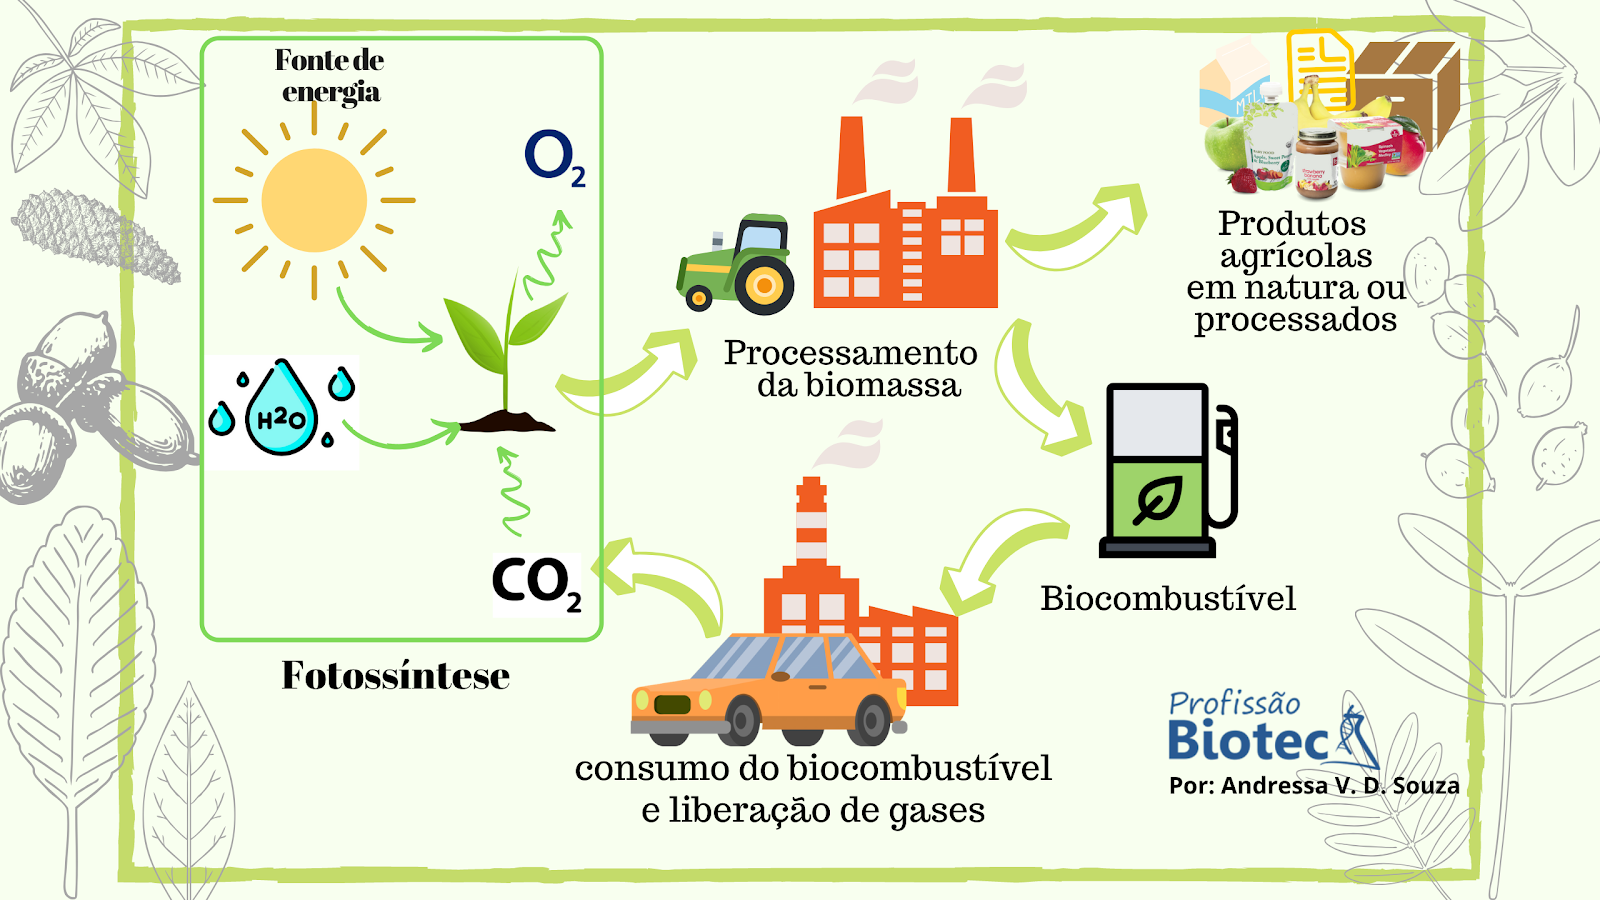 Ciclo do carbono neutro do biocombustível. Da captação do CO₂ na produção da planta à emissão pelo biocombustível.